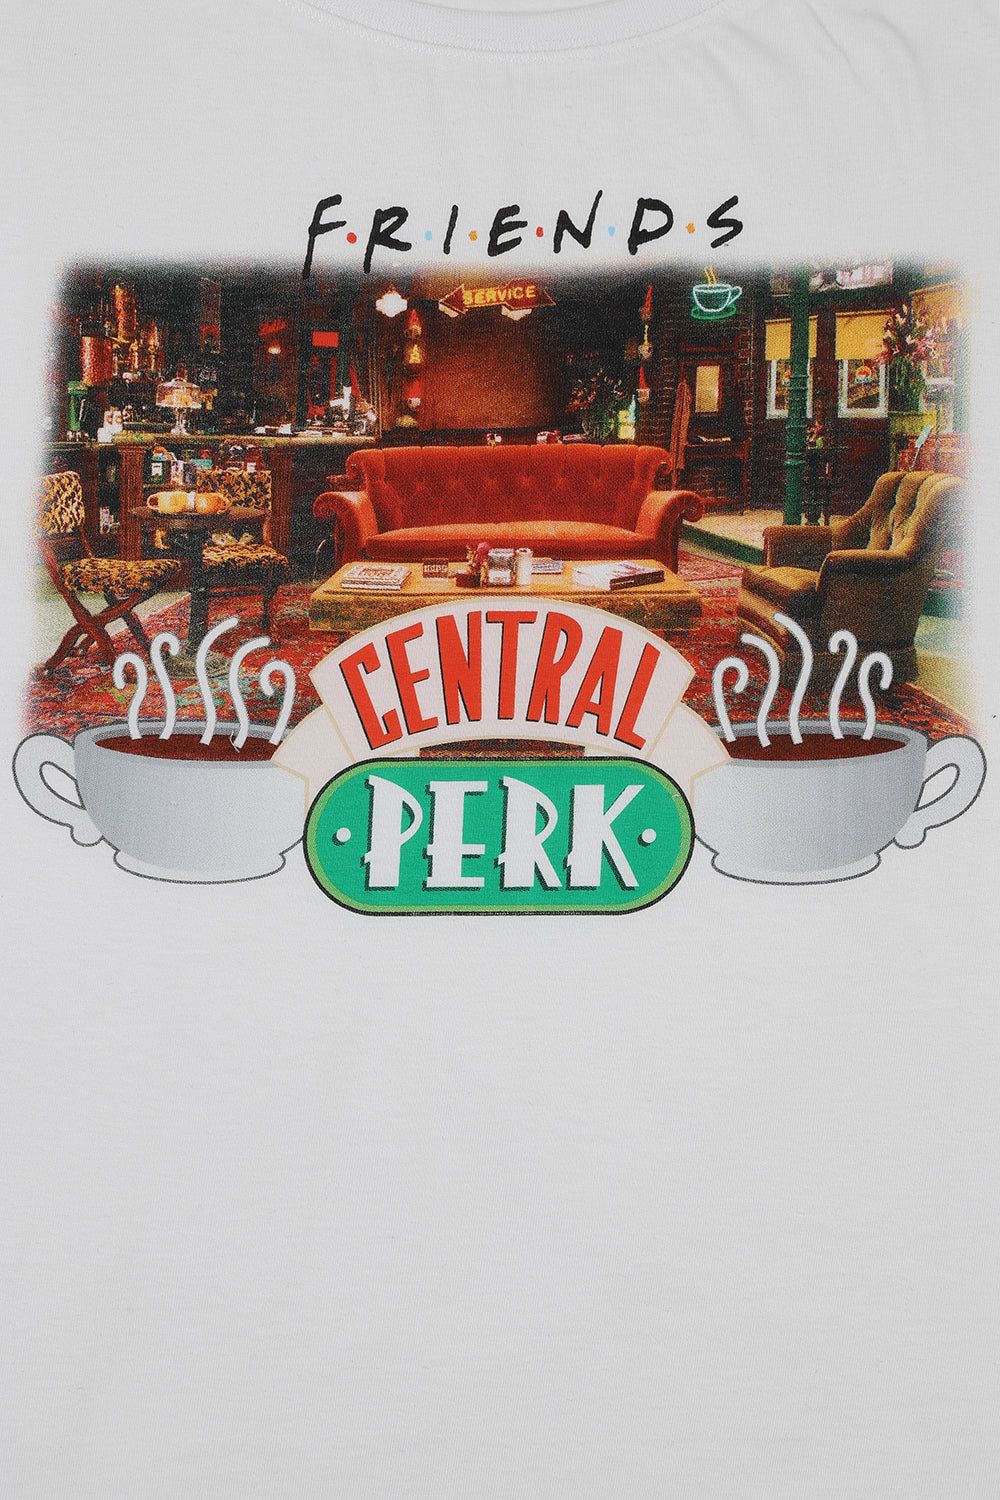 FRIENDS Central Perk Short Pyjamas for Girls Cafe TV Show Kids PJ Set Black White - Pyjamas.com